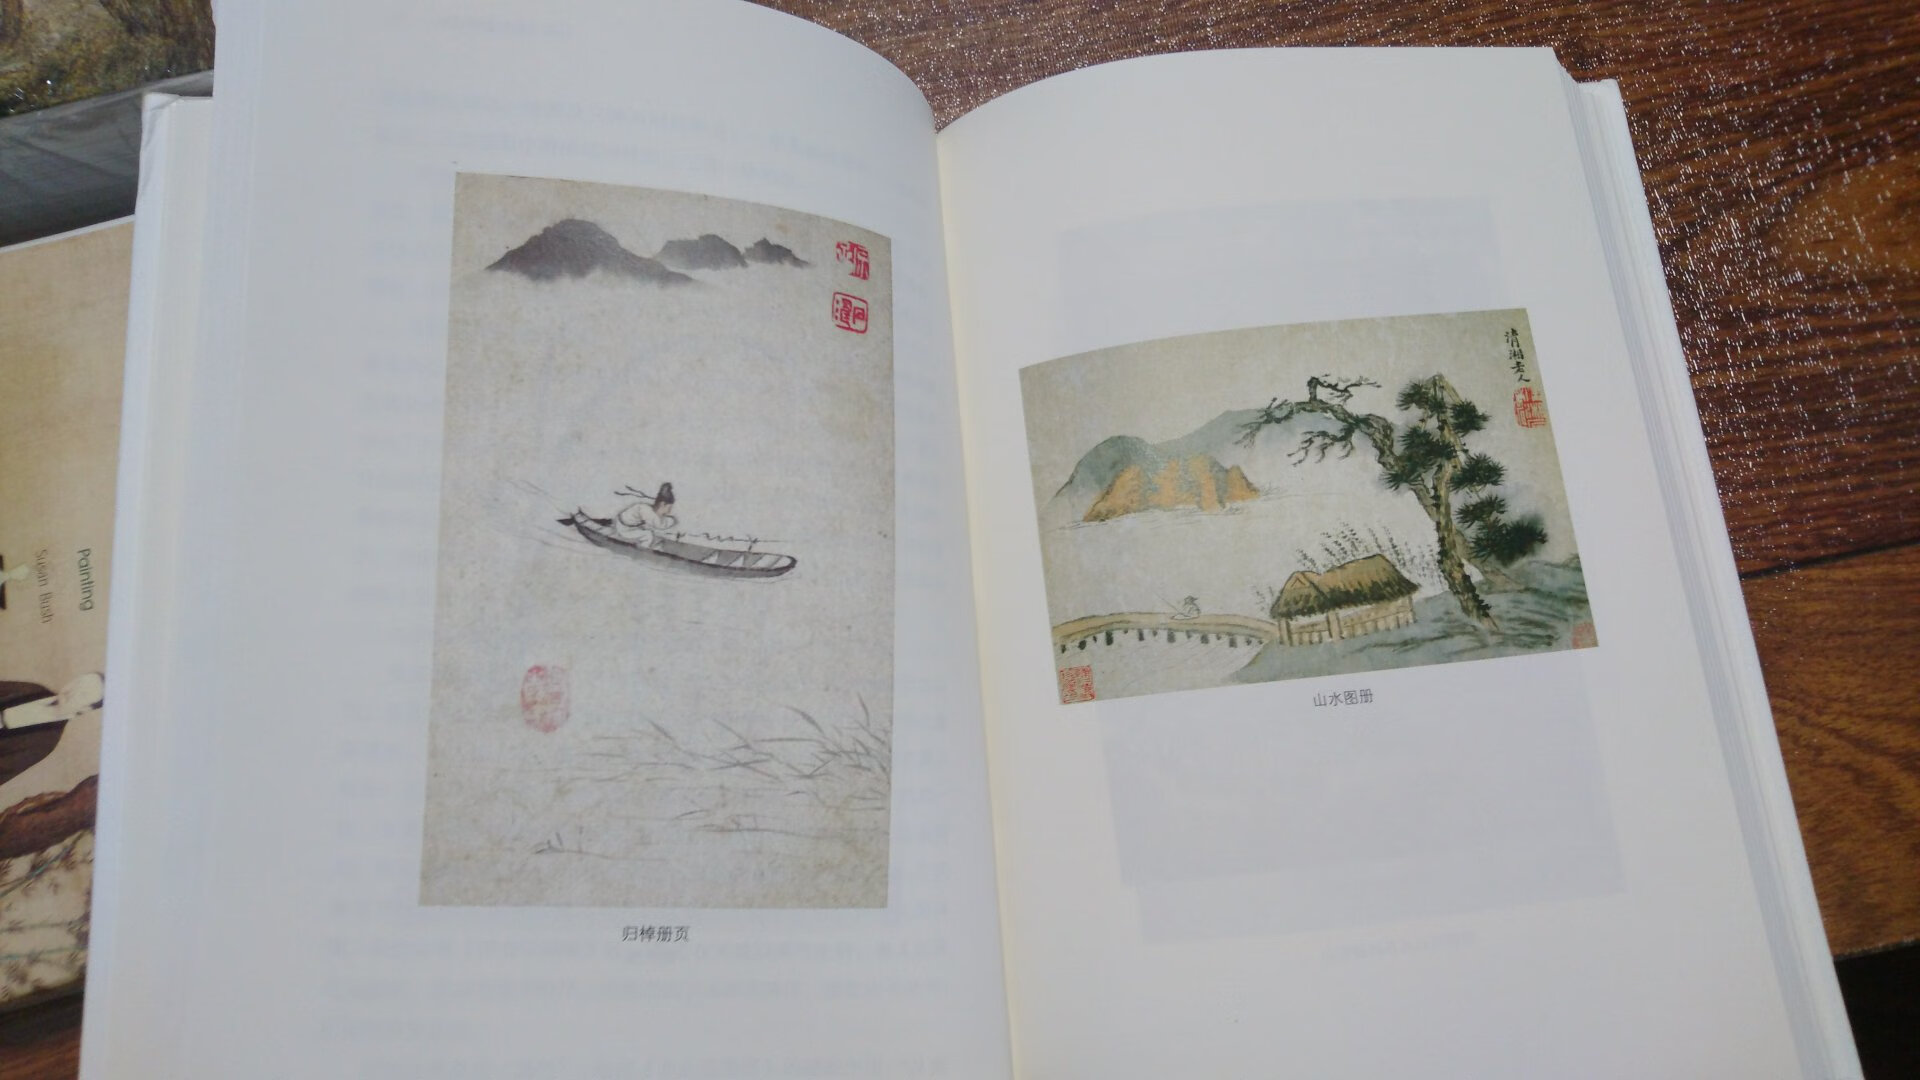 .精装本，印刷清晰，慢慢品读中国人文画。